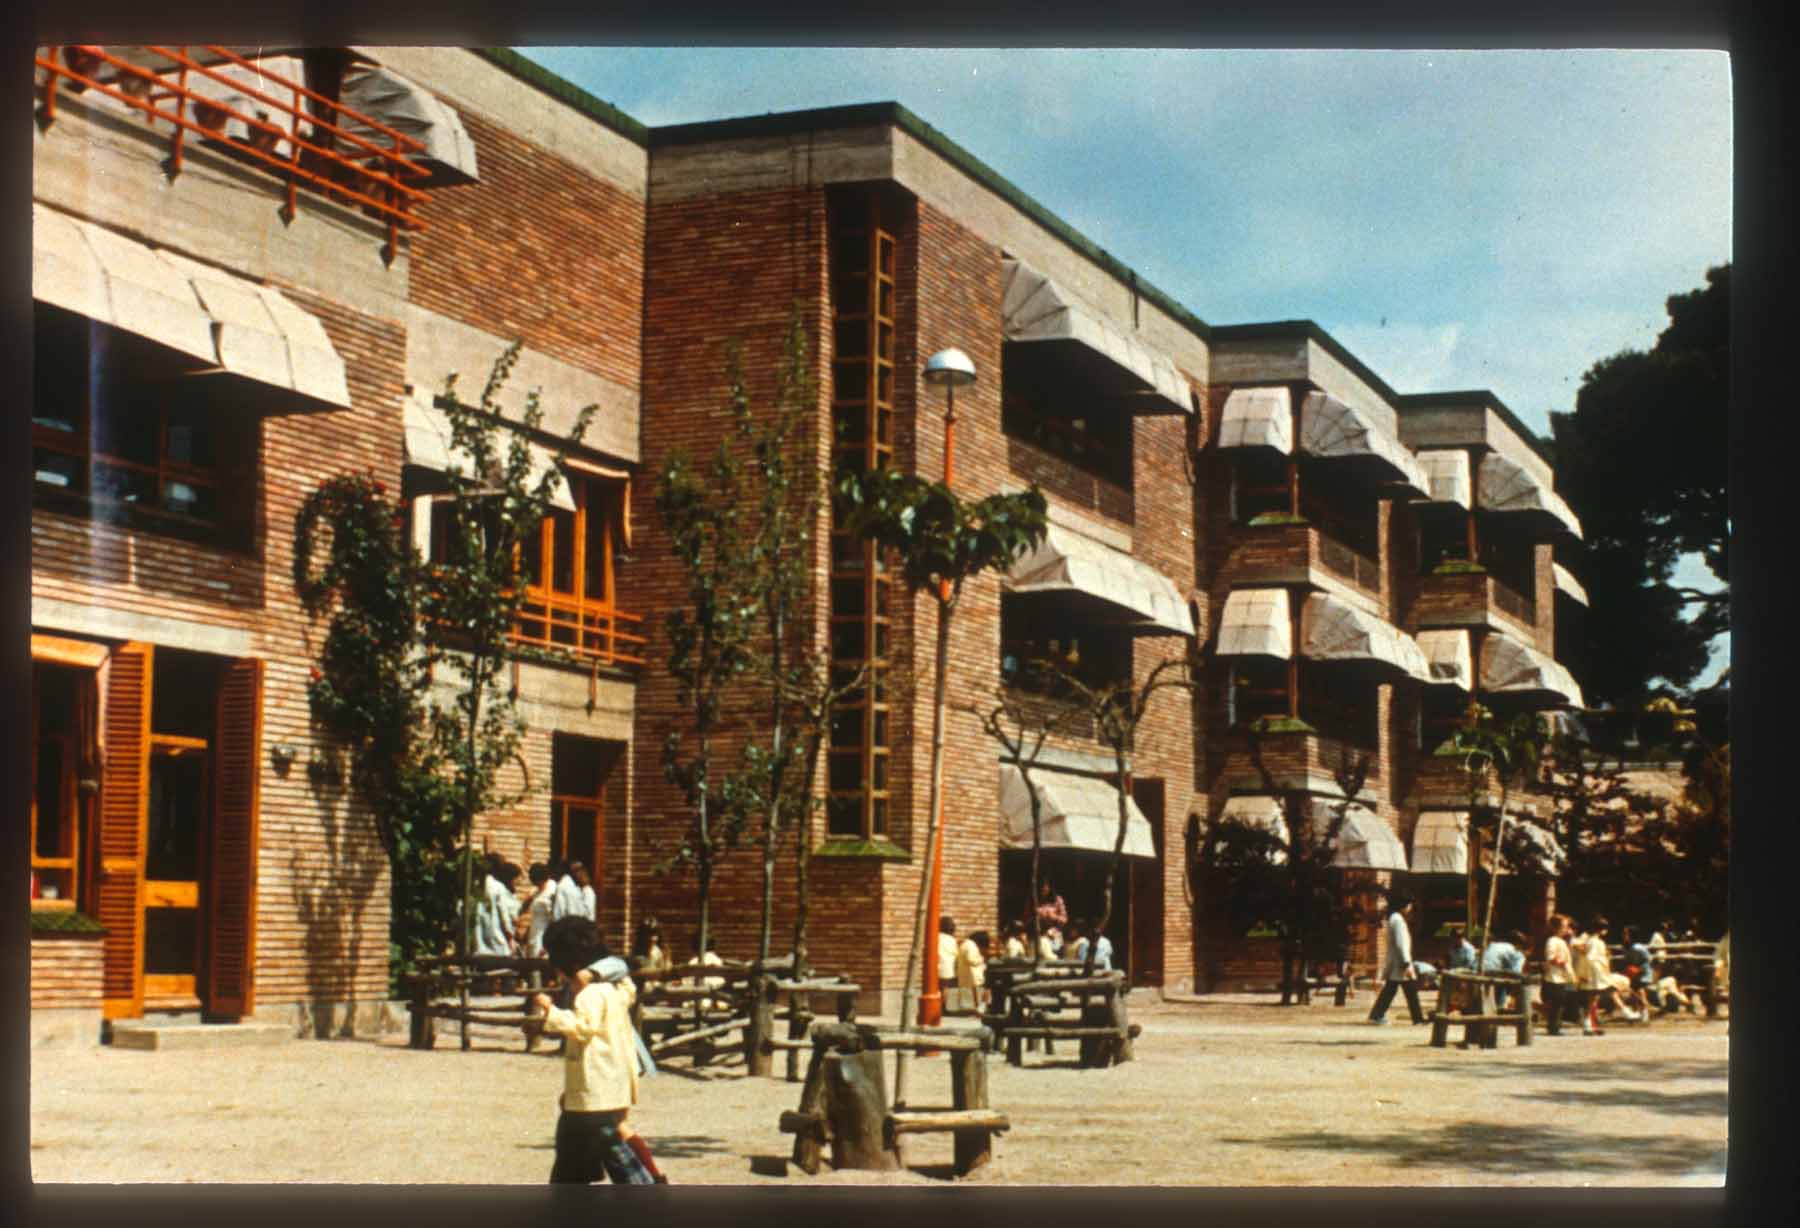 Scola Garbi, Esplugues De Llobregat, Near Barcelona, 1975 - 1978